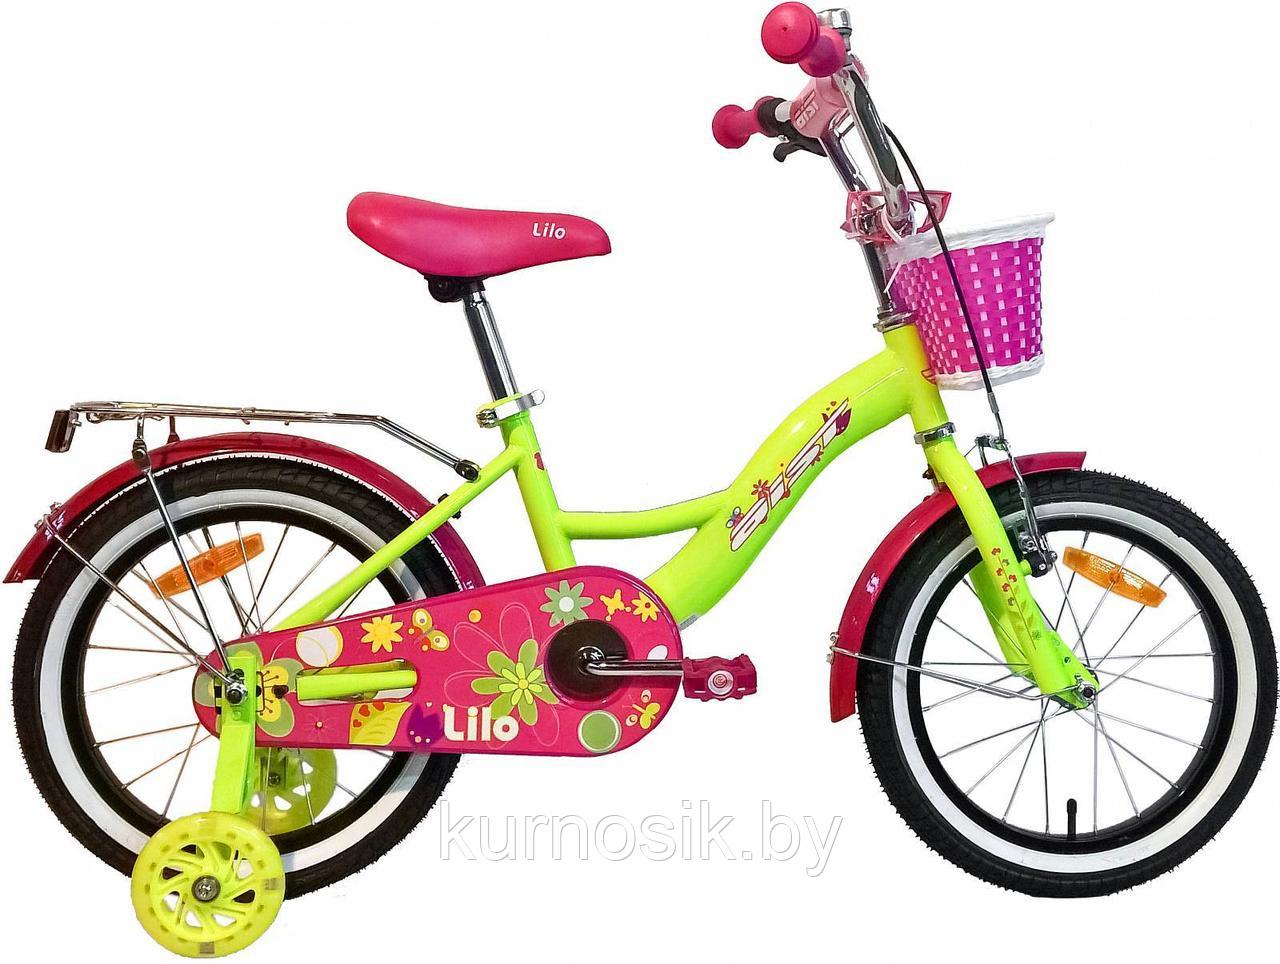 Детский велосипед AIST Lilo 16" желтый